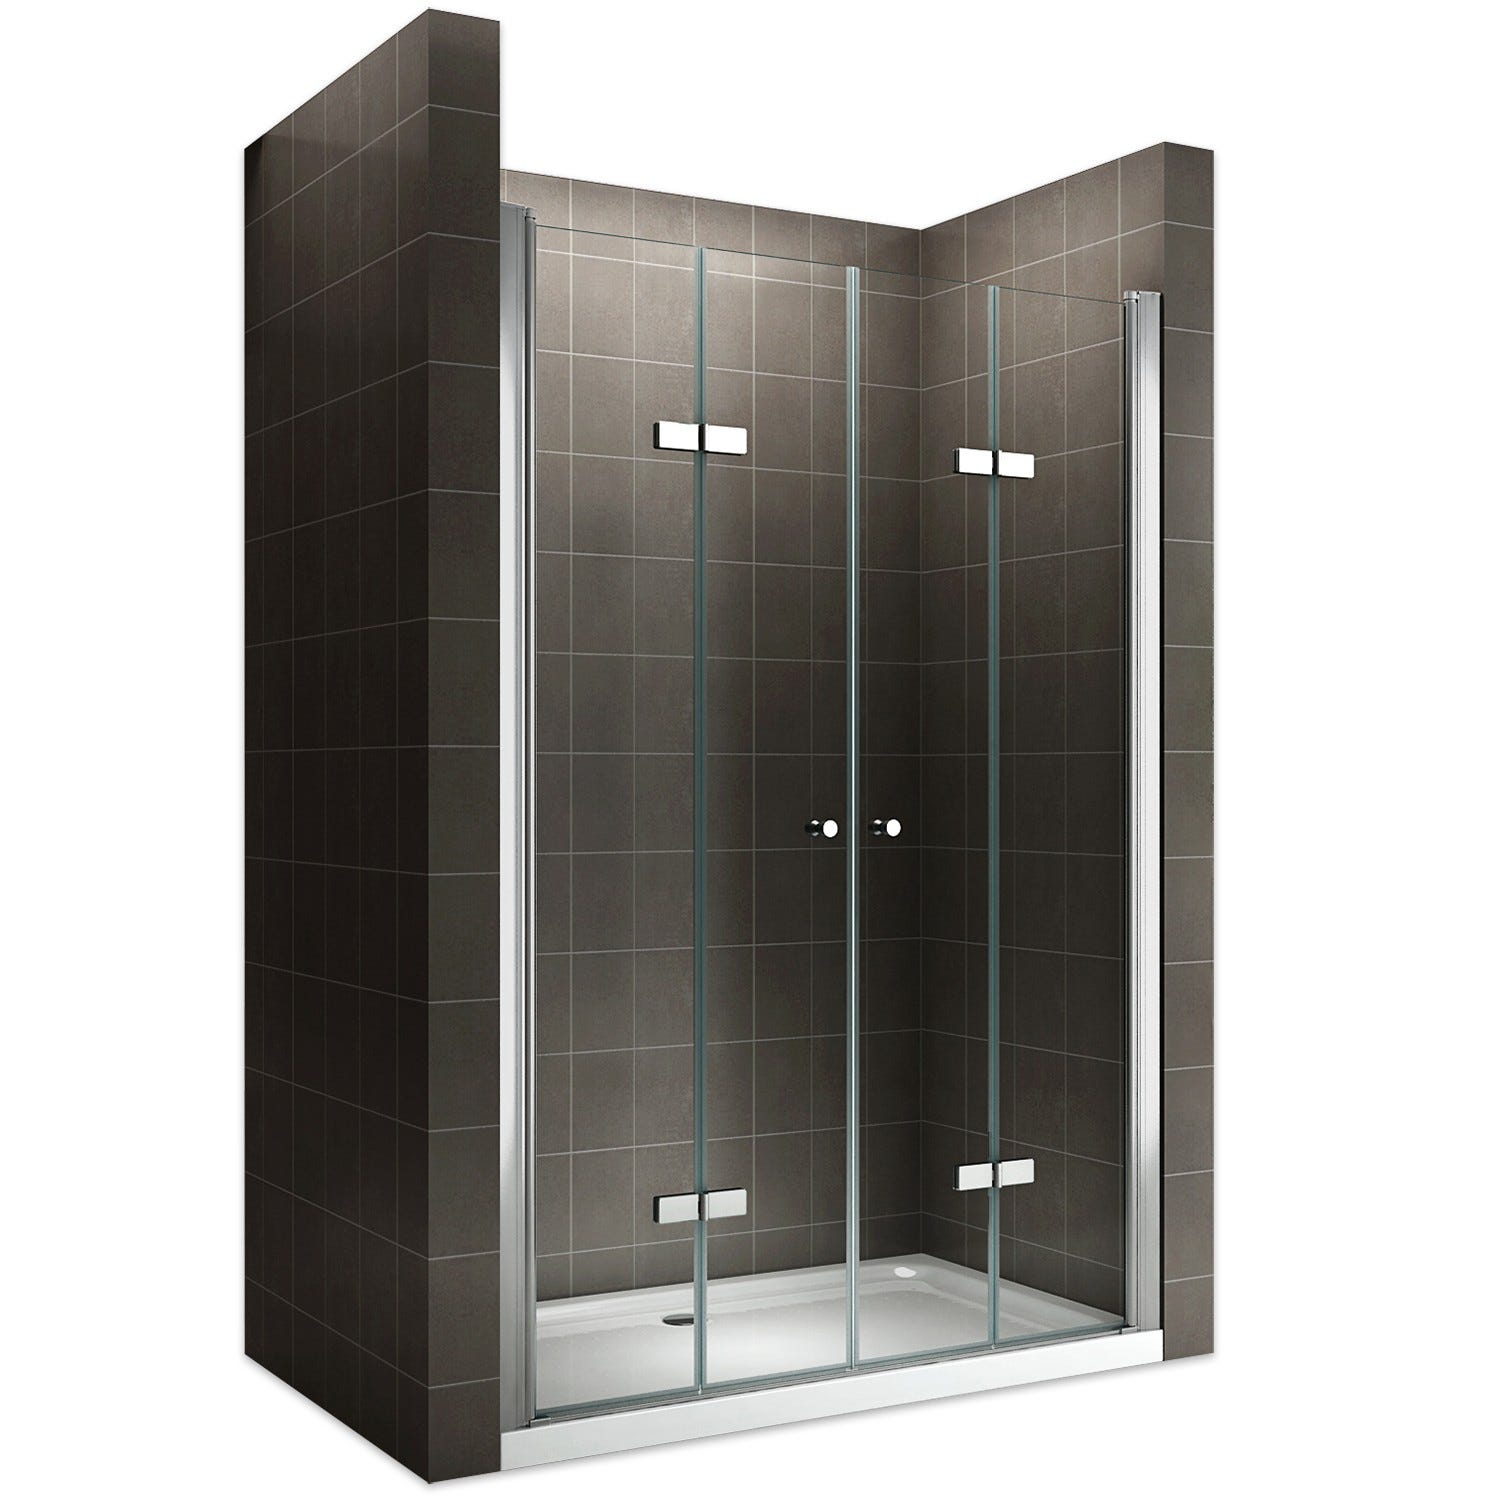 EMMY Porte de douche pliante pivotante H 195 cm largeur réglable 116 à 120 cm verre transparent 0